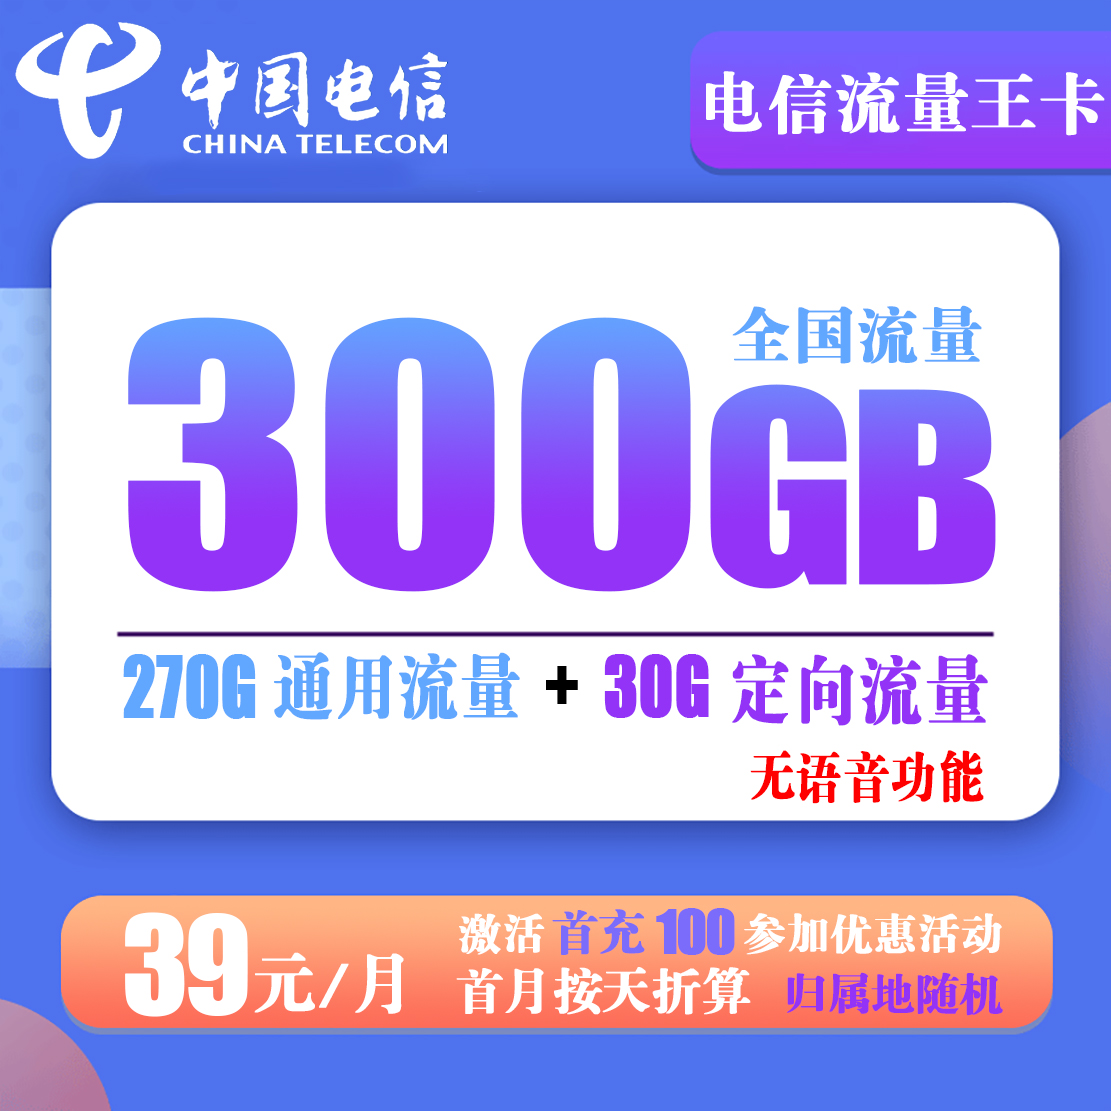 免费办理 电信流量王卡 39元300G全国流量【无语音功能】